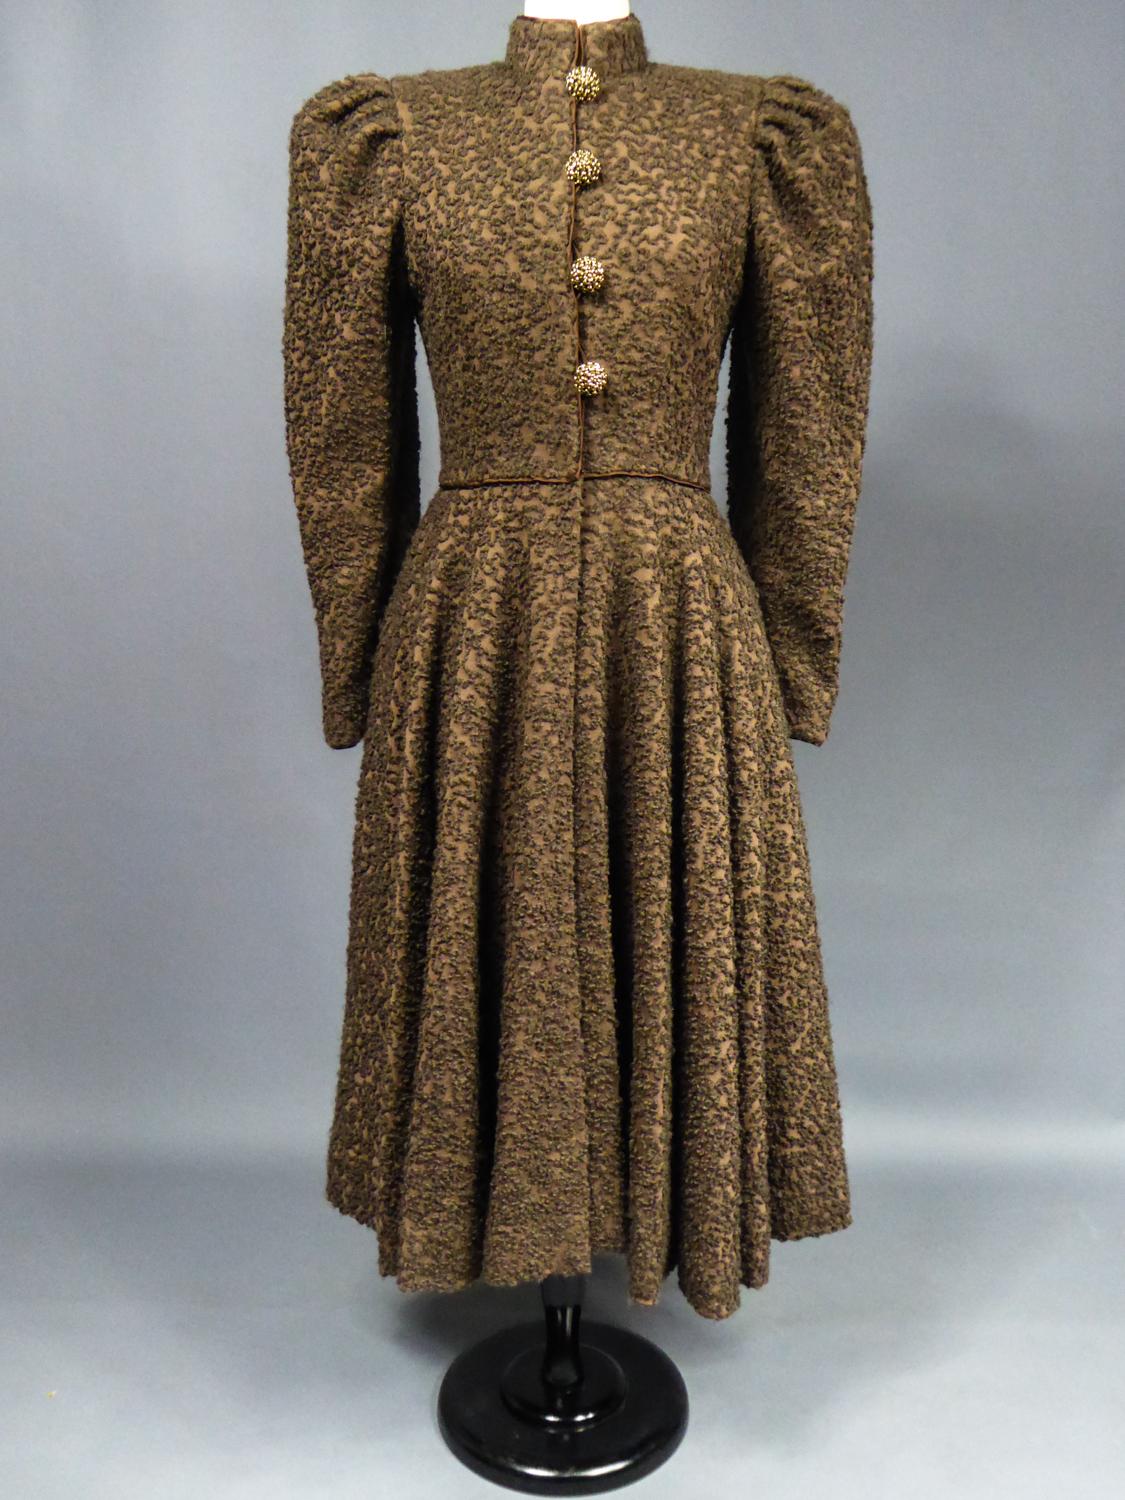 dress 1945